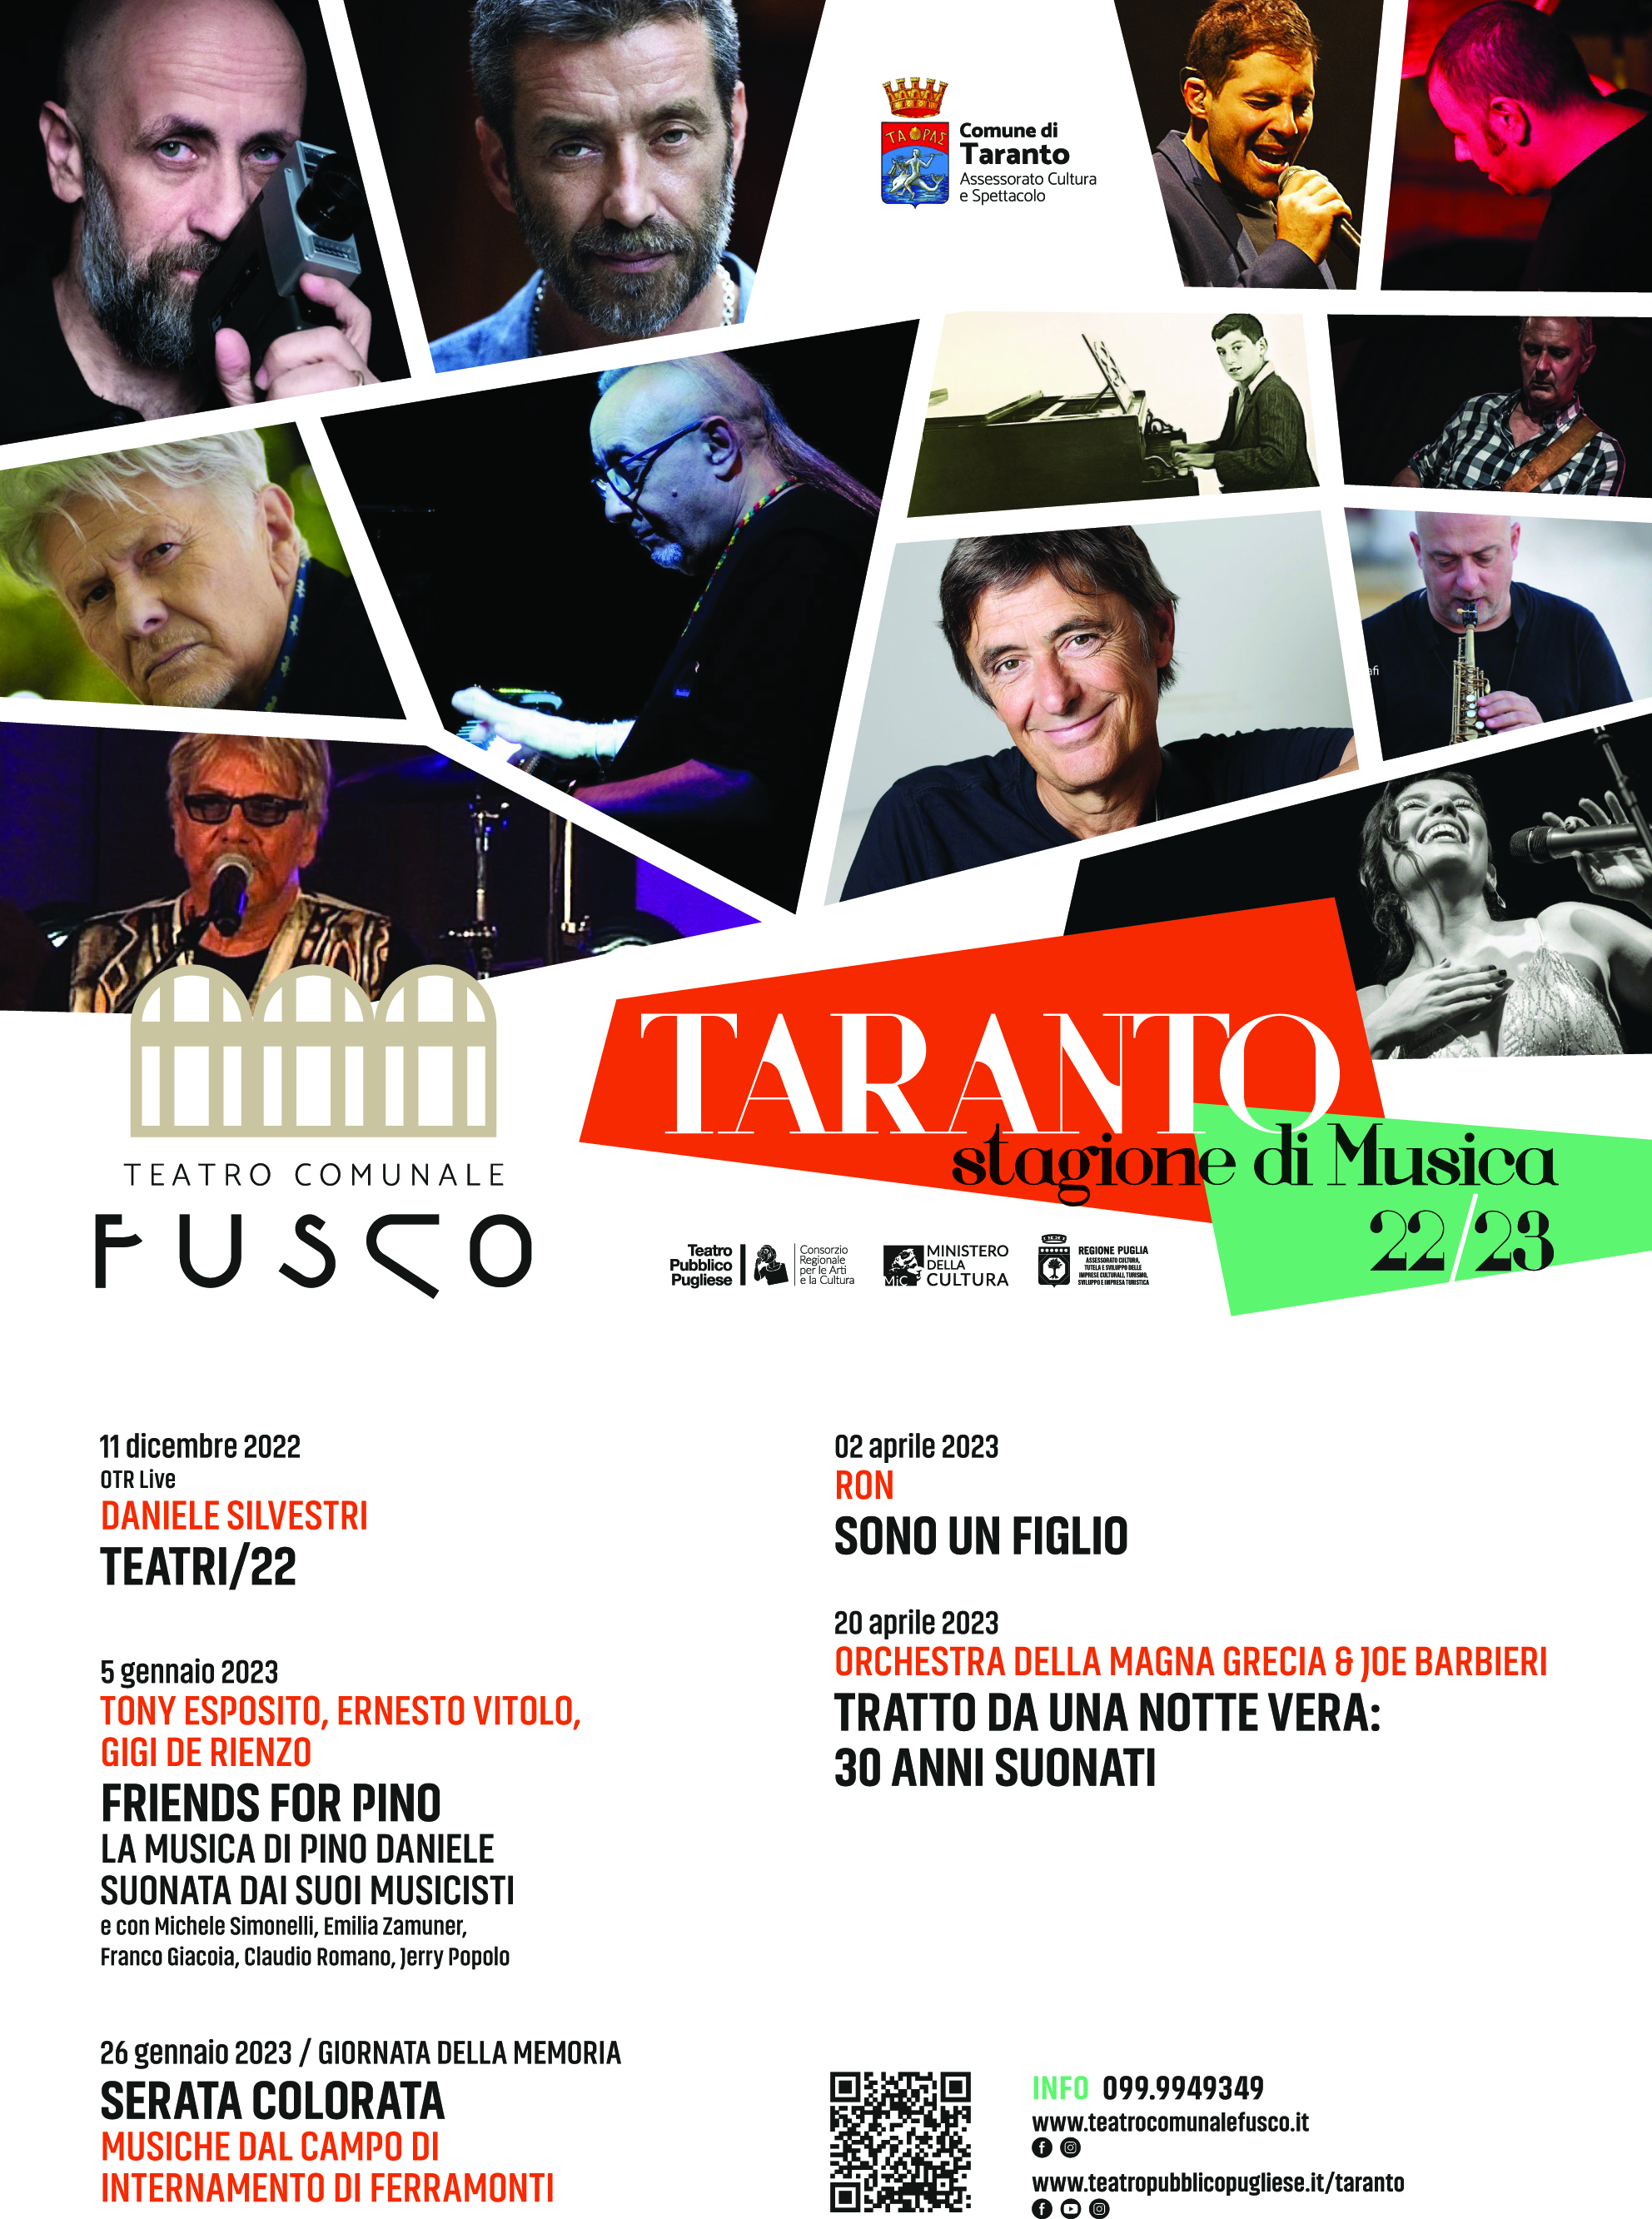 TARANTO. Teatro Fusco. Stagione di Musica 2022/23. Presentata la stagione musicale